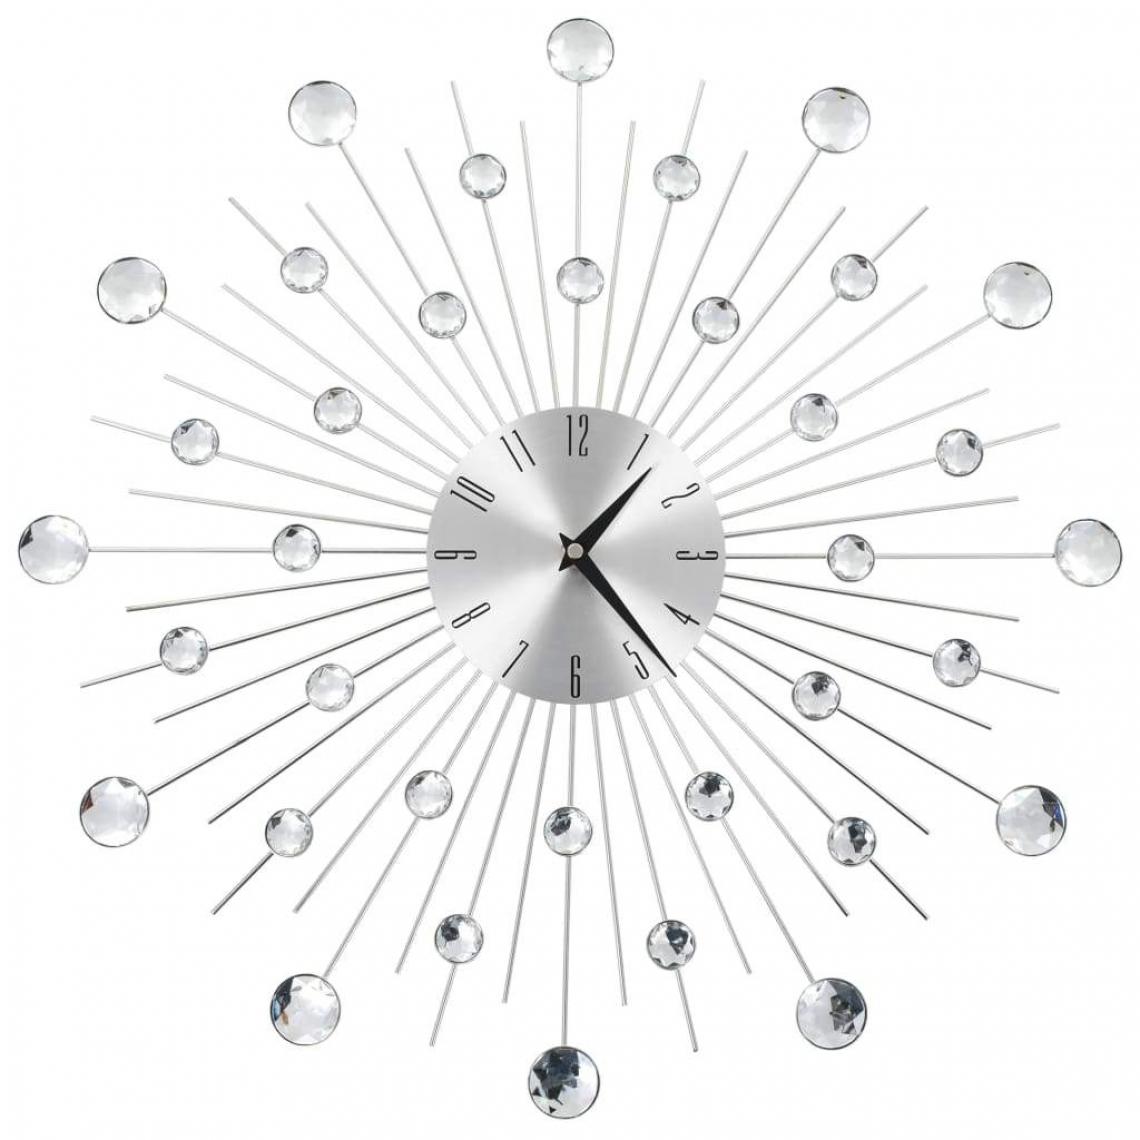 Decoshop26 - Horloge murale avec mouvement à quartz Design moderne 50 cm DEC022273 - Horloges, pendules